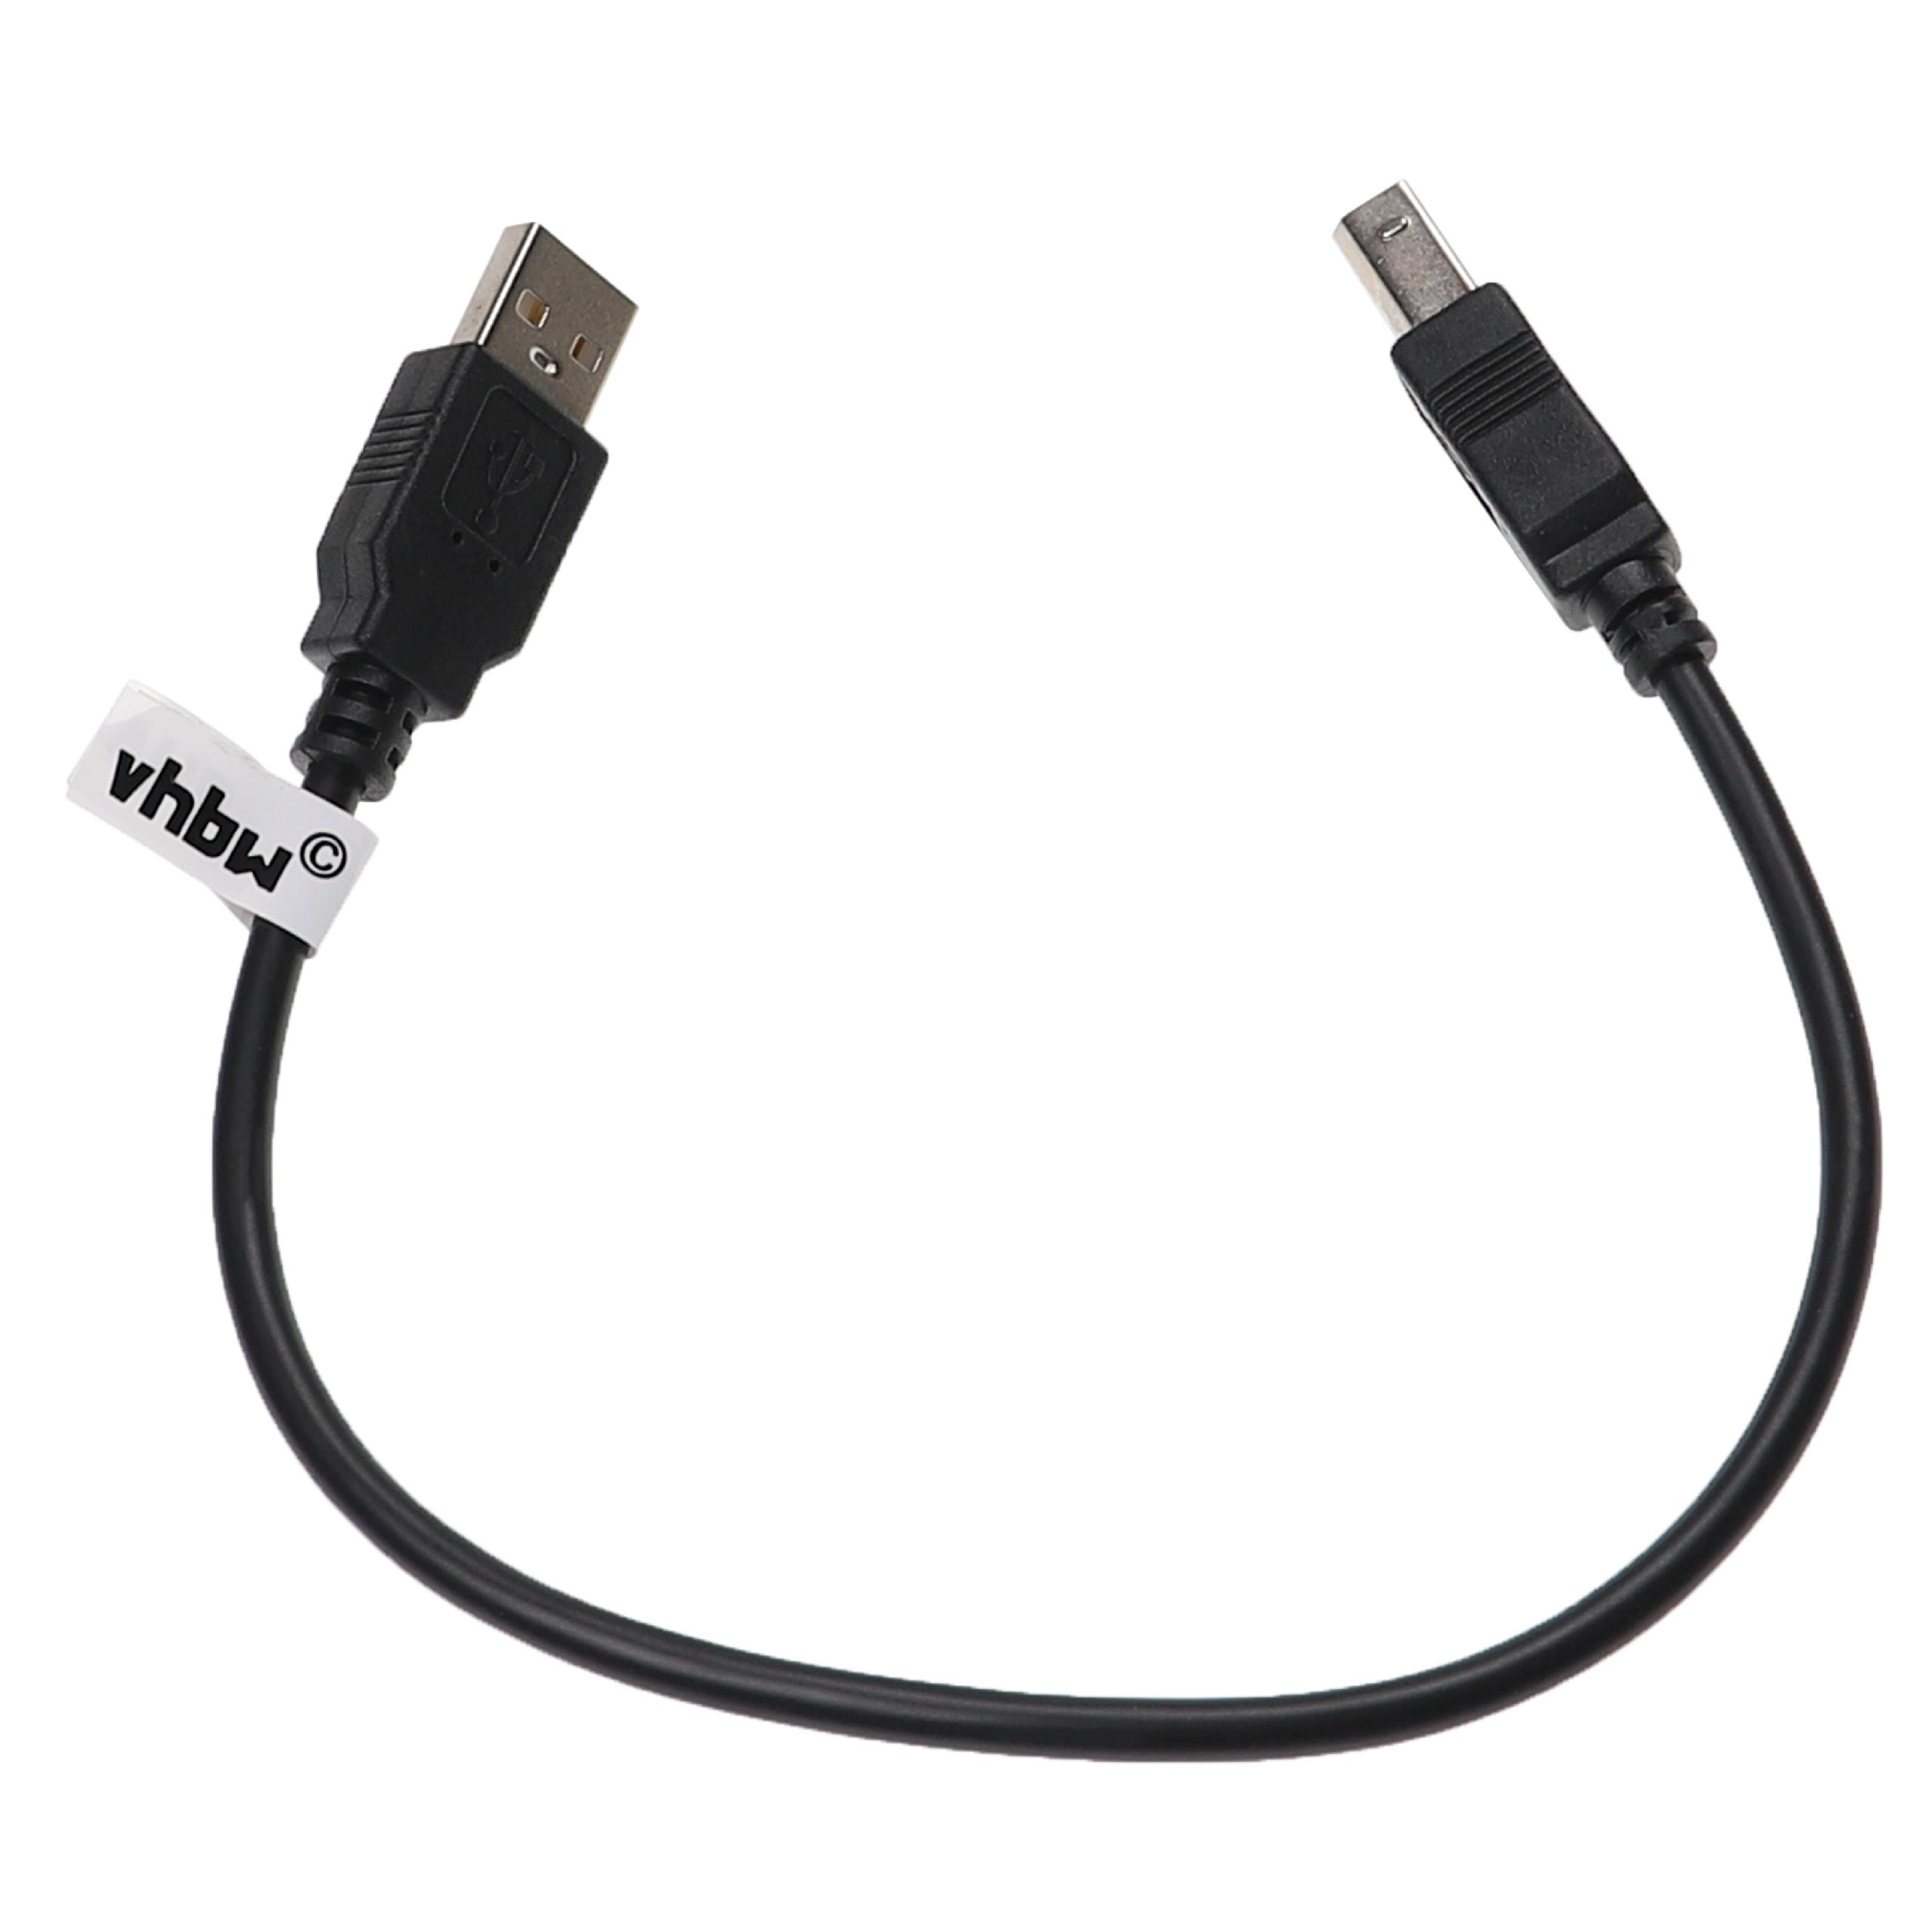 Vhbw cavo della stampante cavo per scanner cavo adattatore da USB A a USB B  - 0,3 m, nero